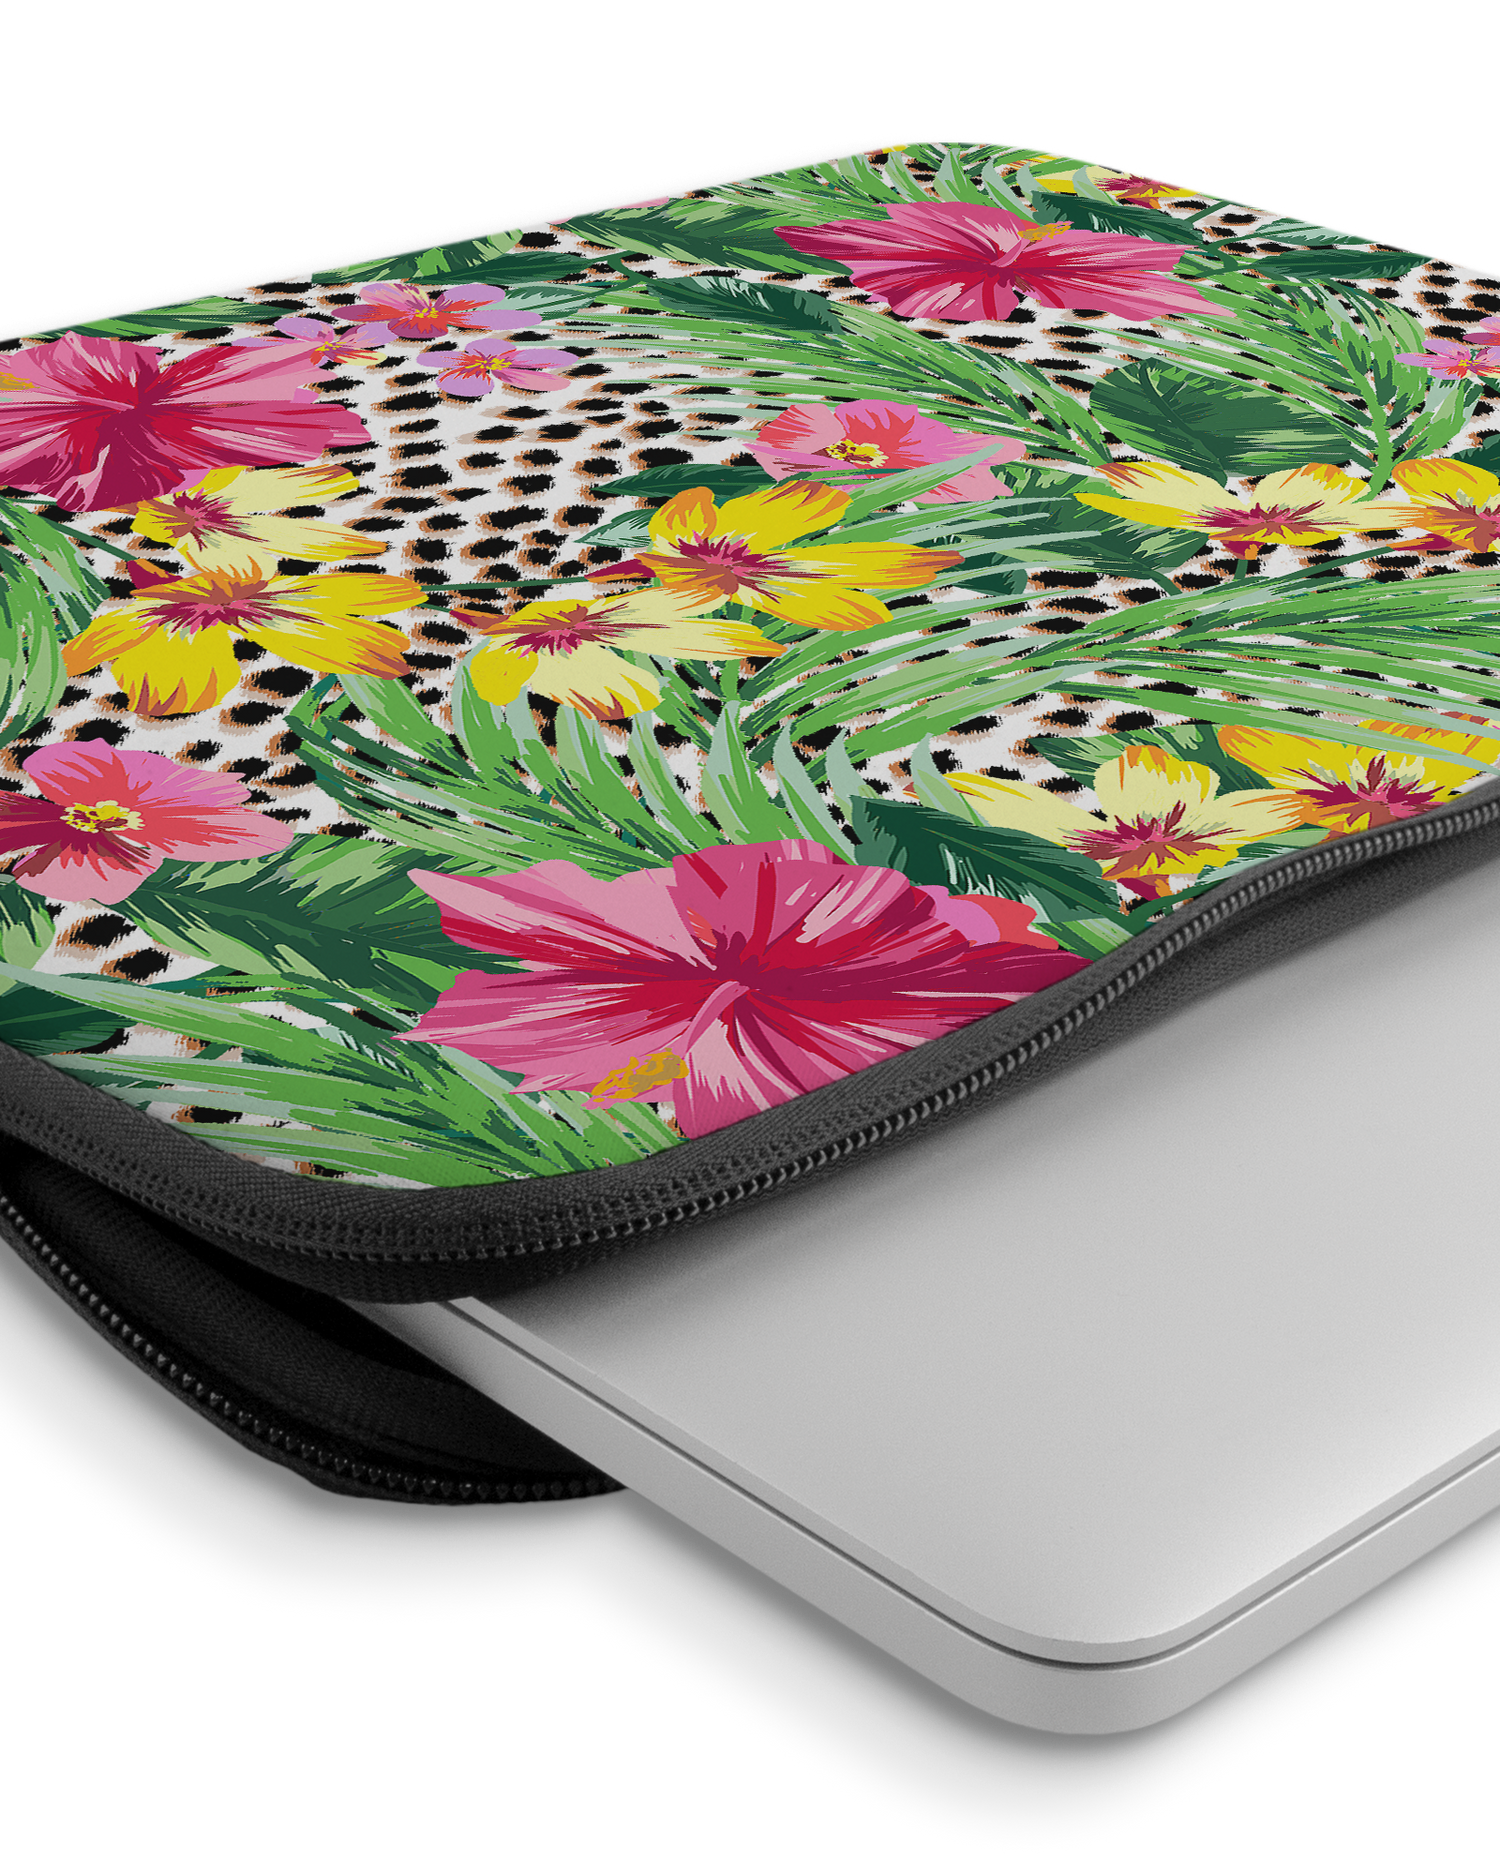 Tropical Cheetah Laptophülle 14-15 Zoll mit Gerät im Inneren